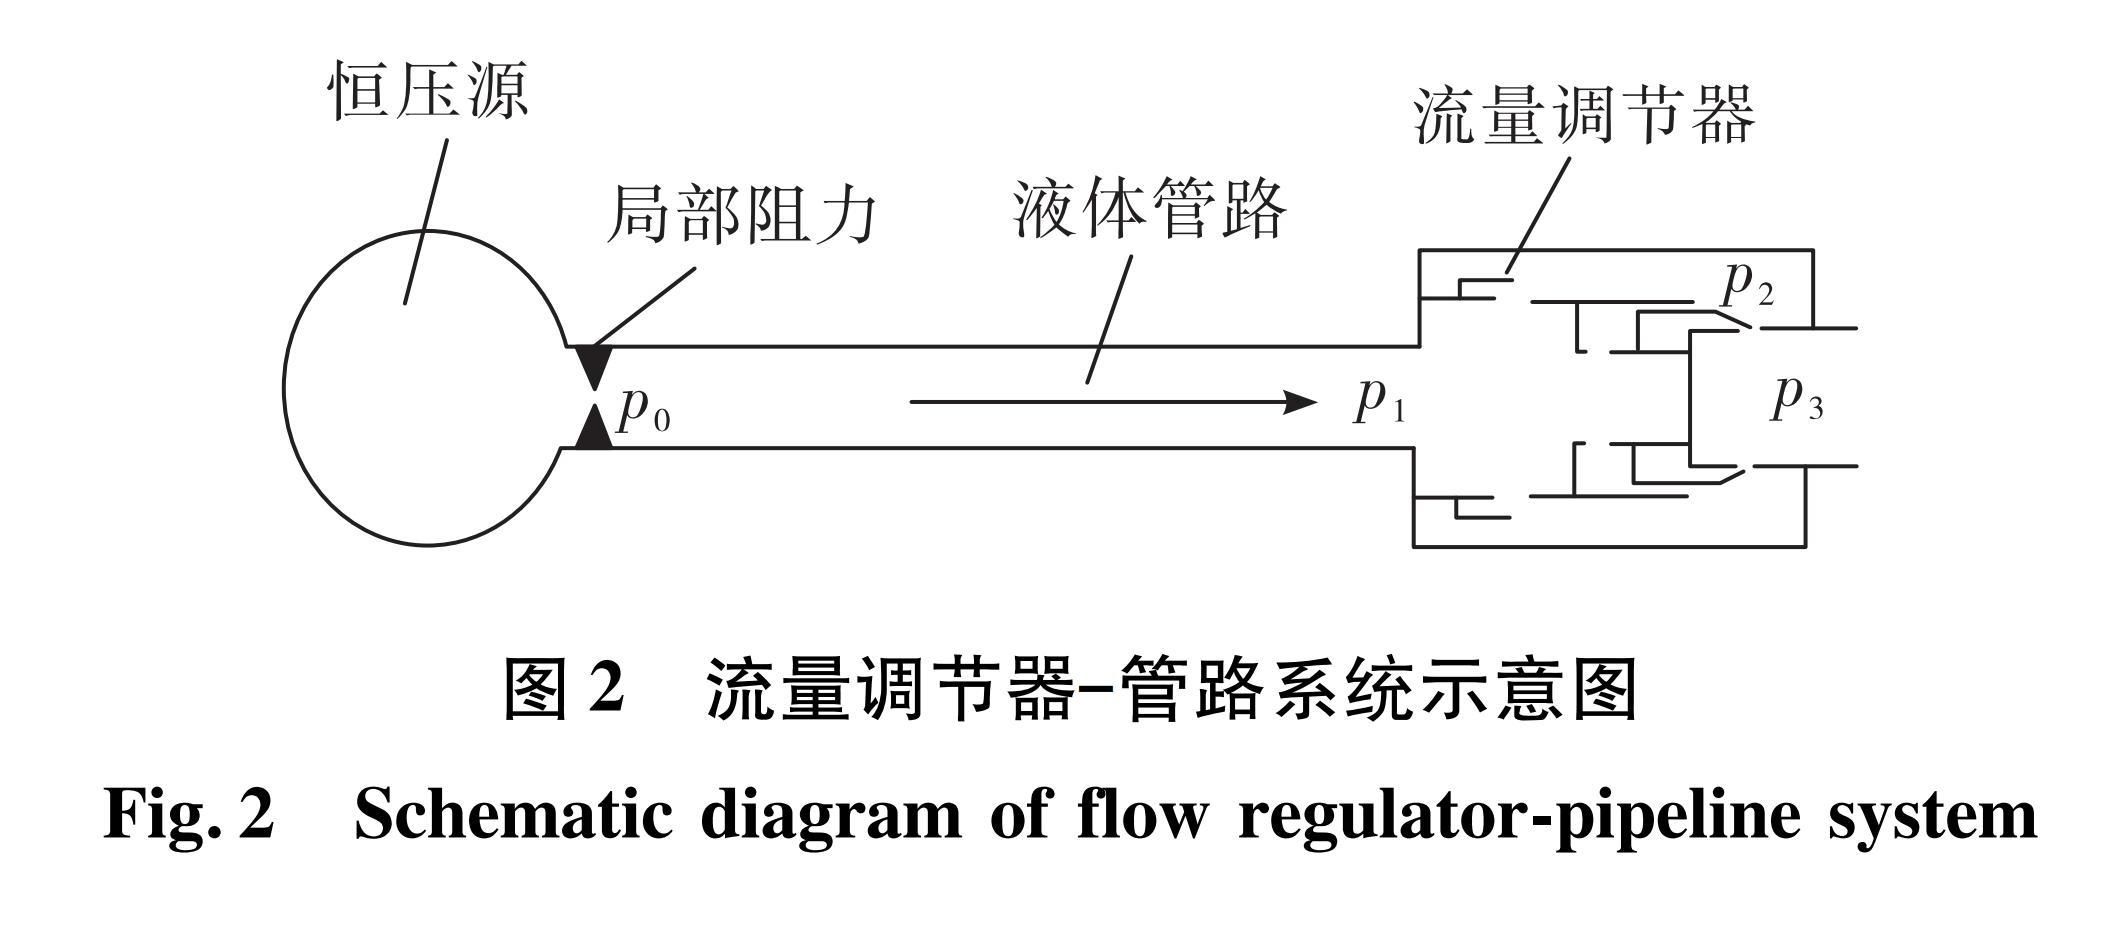 图2 流量调节器—管路系统示意图<br/>Fig.2 Schematic diagram of flow regulator-pipeline system